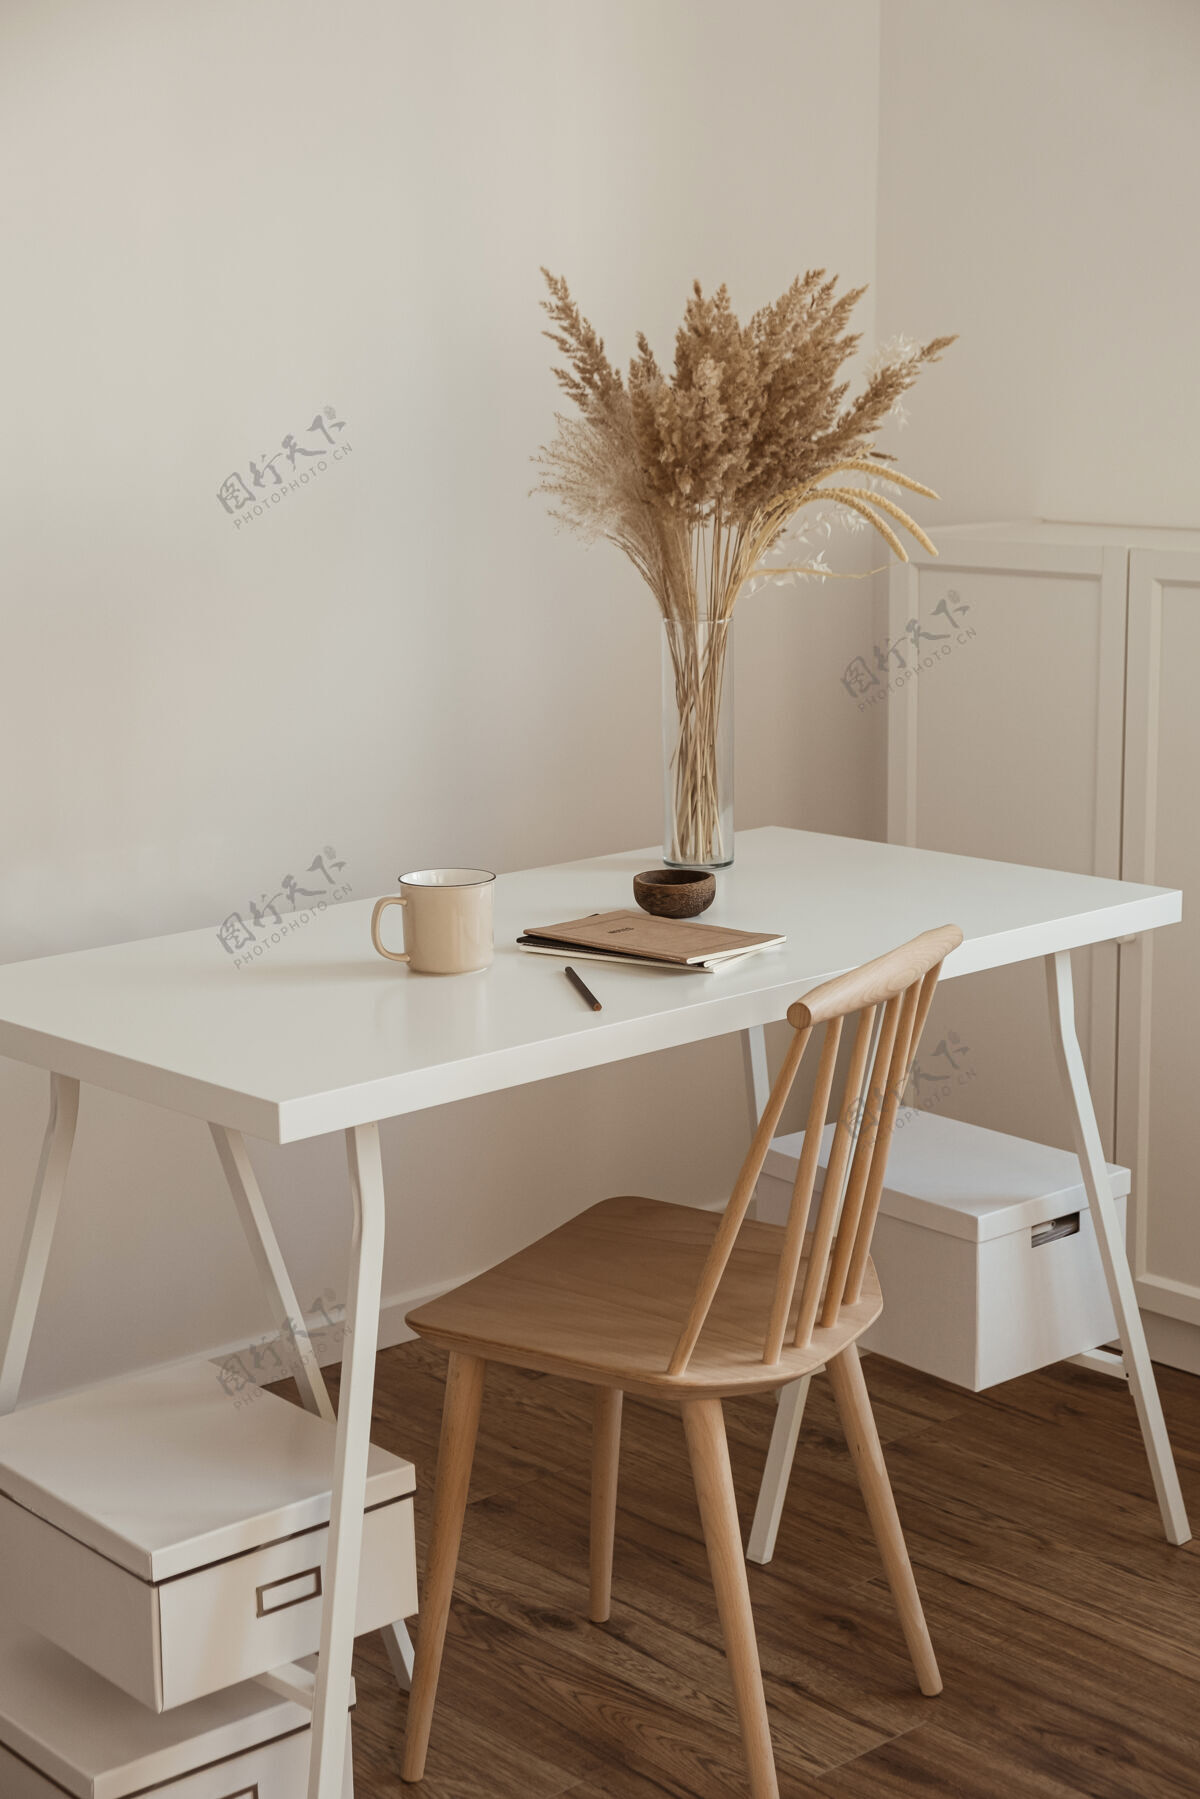 墙壁木质椅子 桌子 芦苇蒲草花束 马克杯 笔记本极简主义室内老板